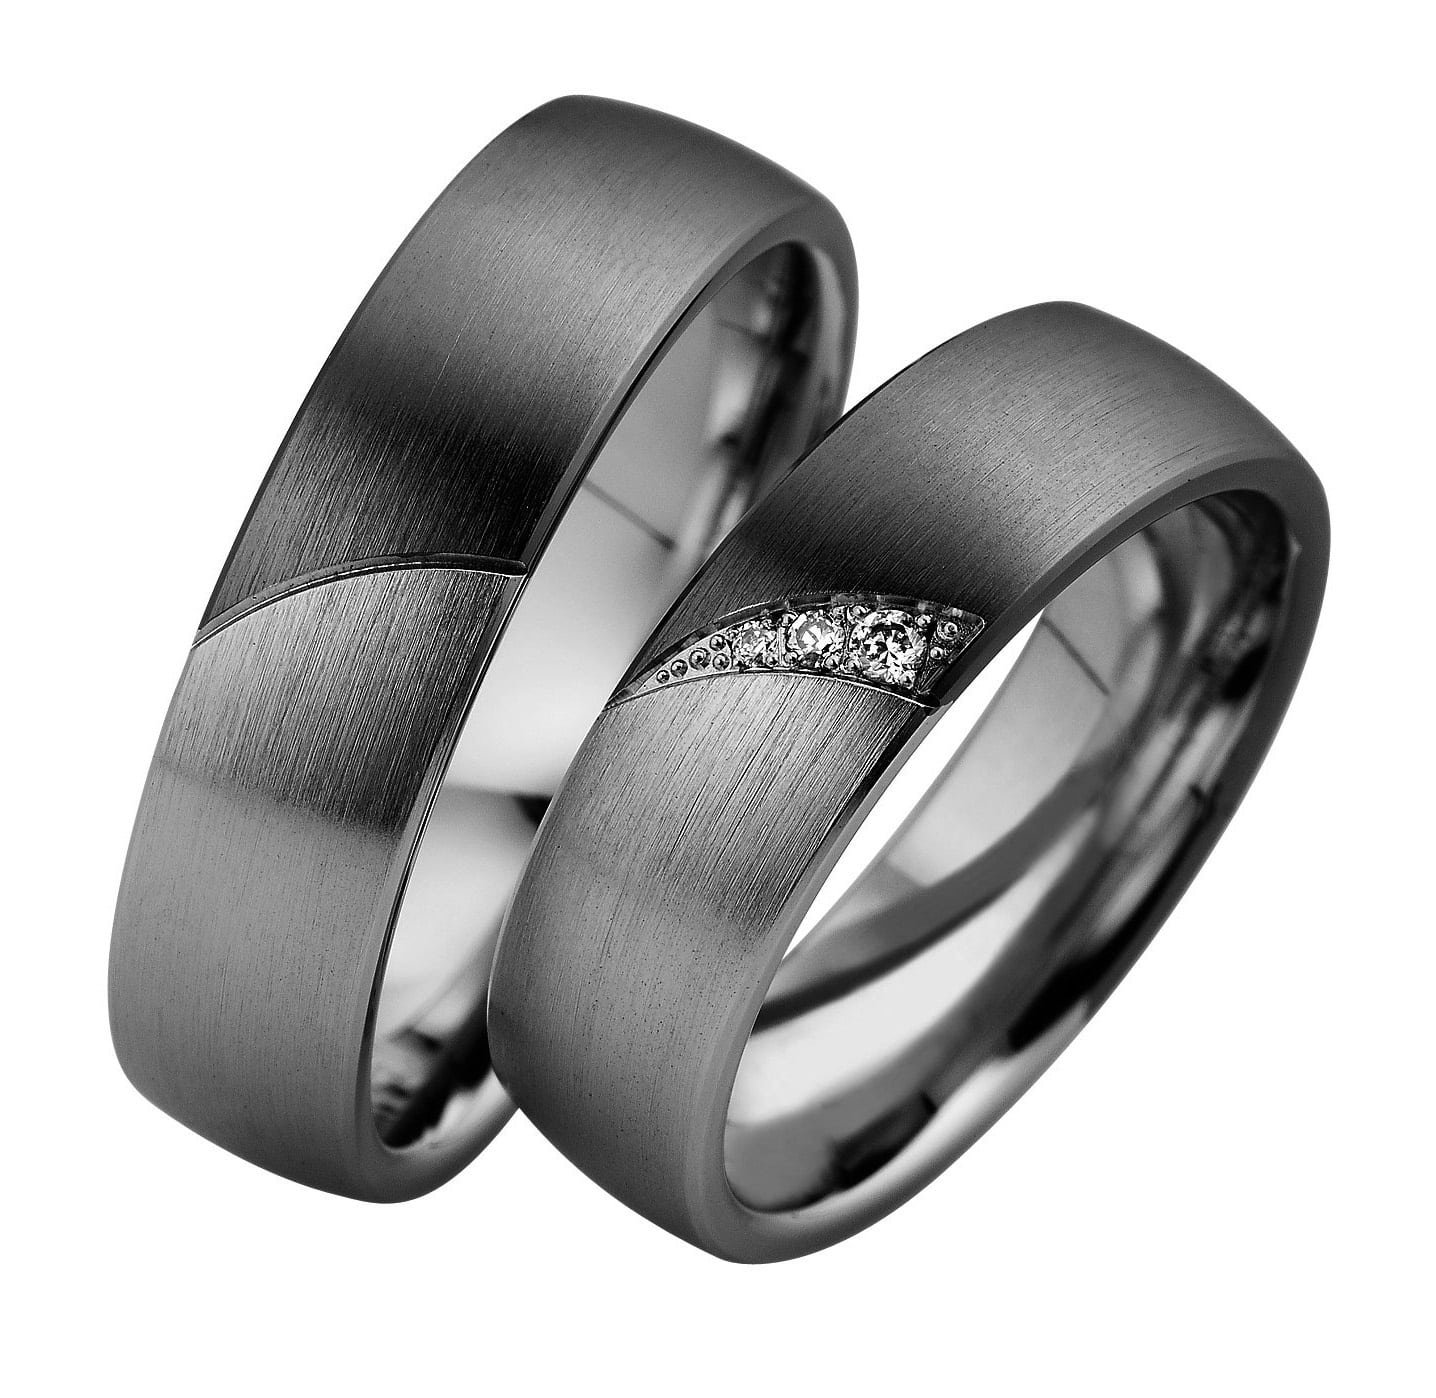 Обручальное кольцо серебро мужское. Серебряное обручальное кольцо. Мужское обручальное кольцо. Обручальные кольца серебро. Обручальные кольца парные.